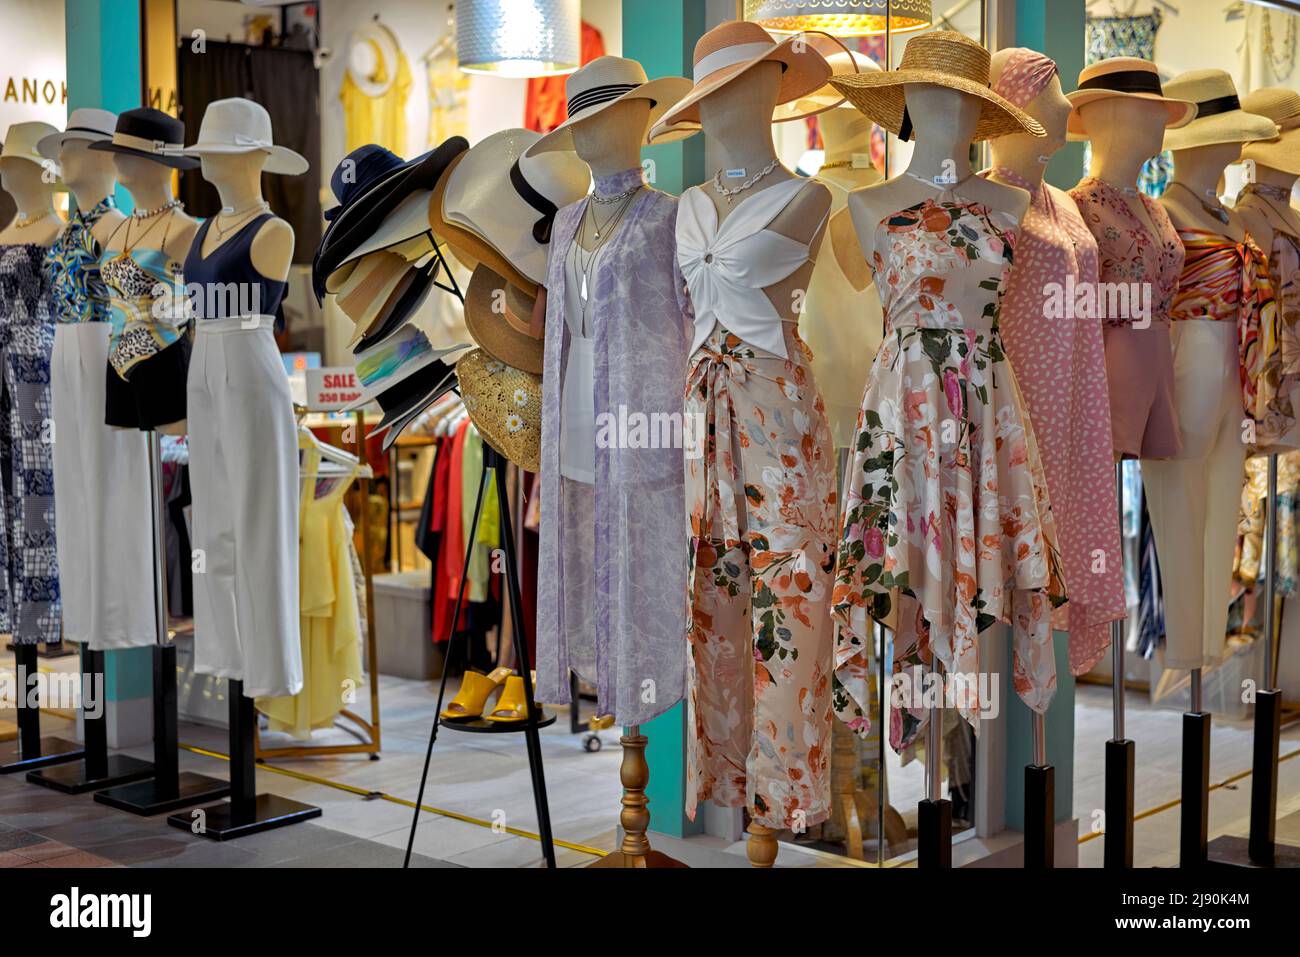 Tienda de ropa para mujer con sombreros siendo la característica dominante Foto de stock